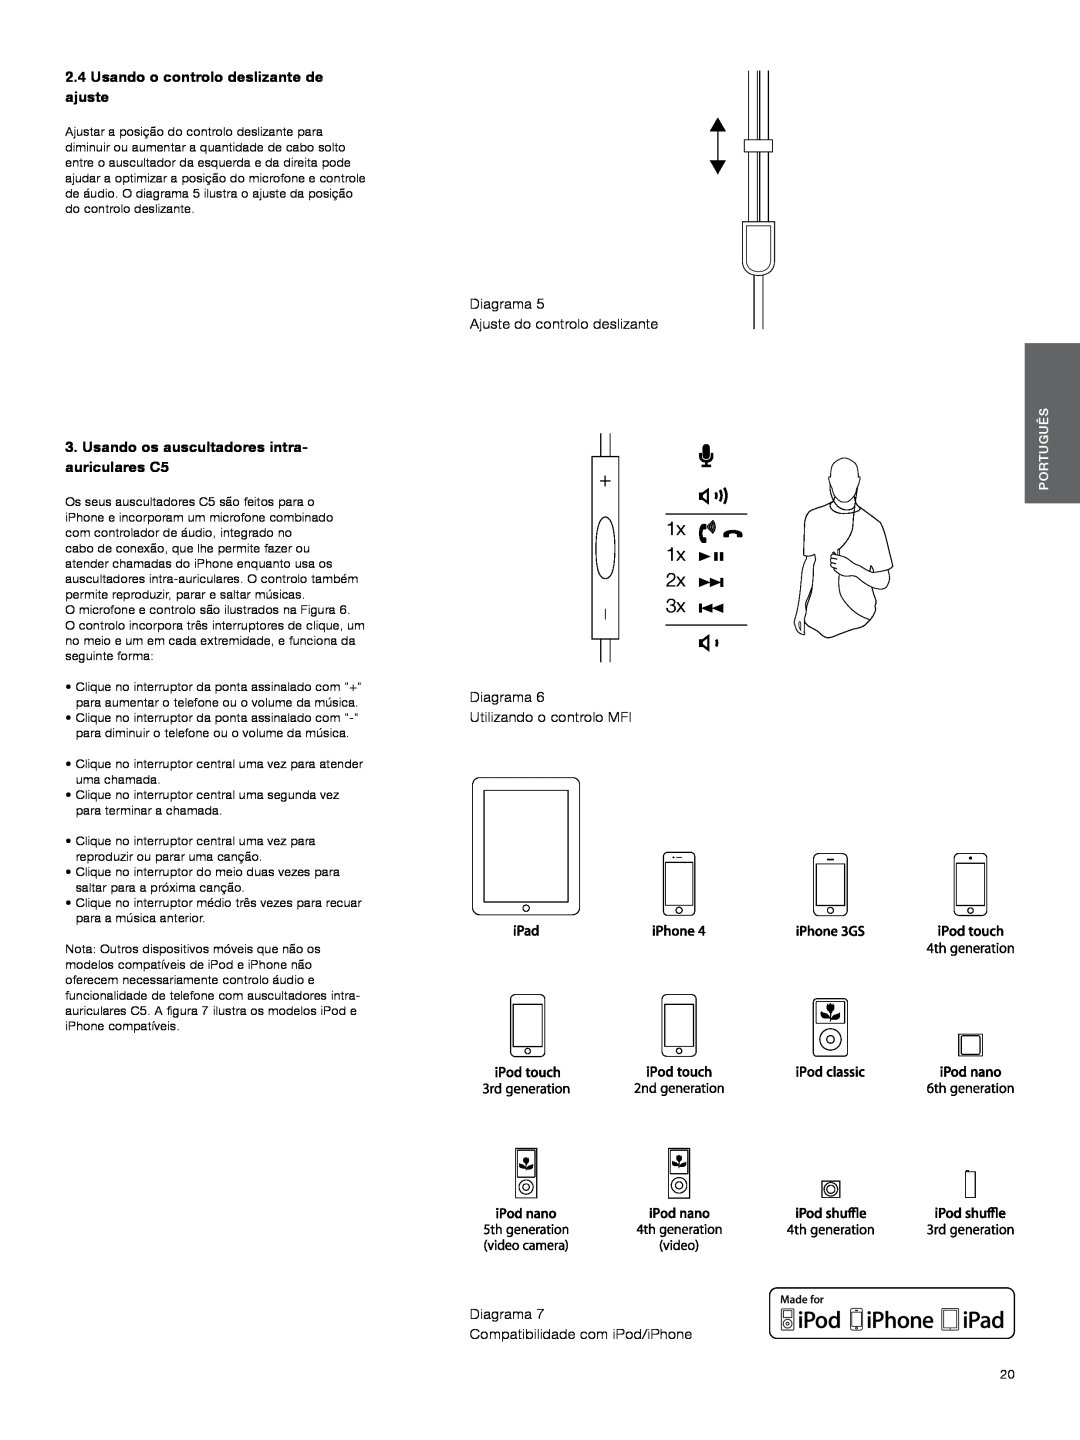 Bowers & Wilkins C5 manual 1x, 2.4Usando o controlo deslizante de ajuste, Diagrama Ajuste do controlo deslizante, Português 